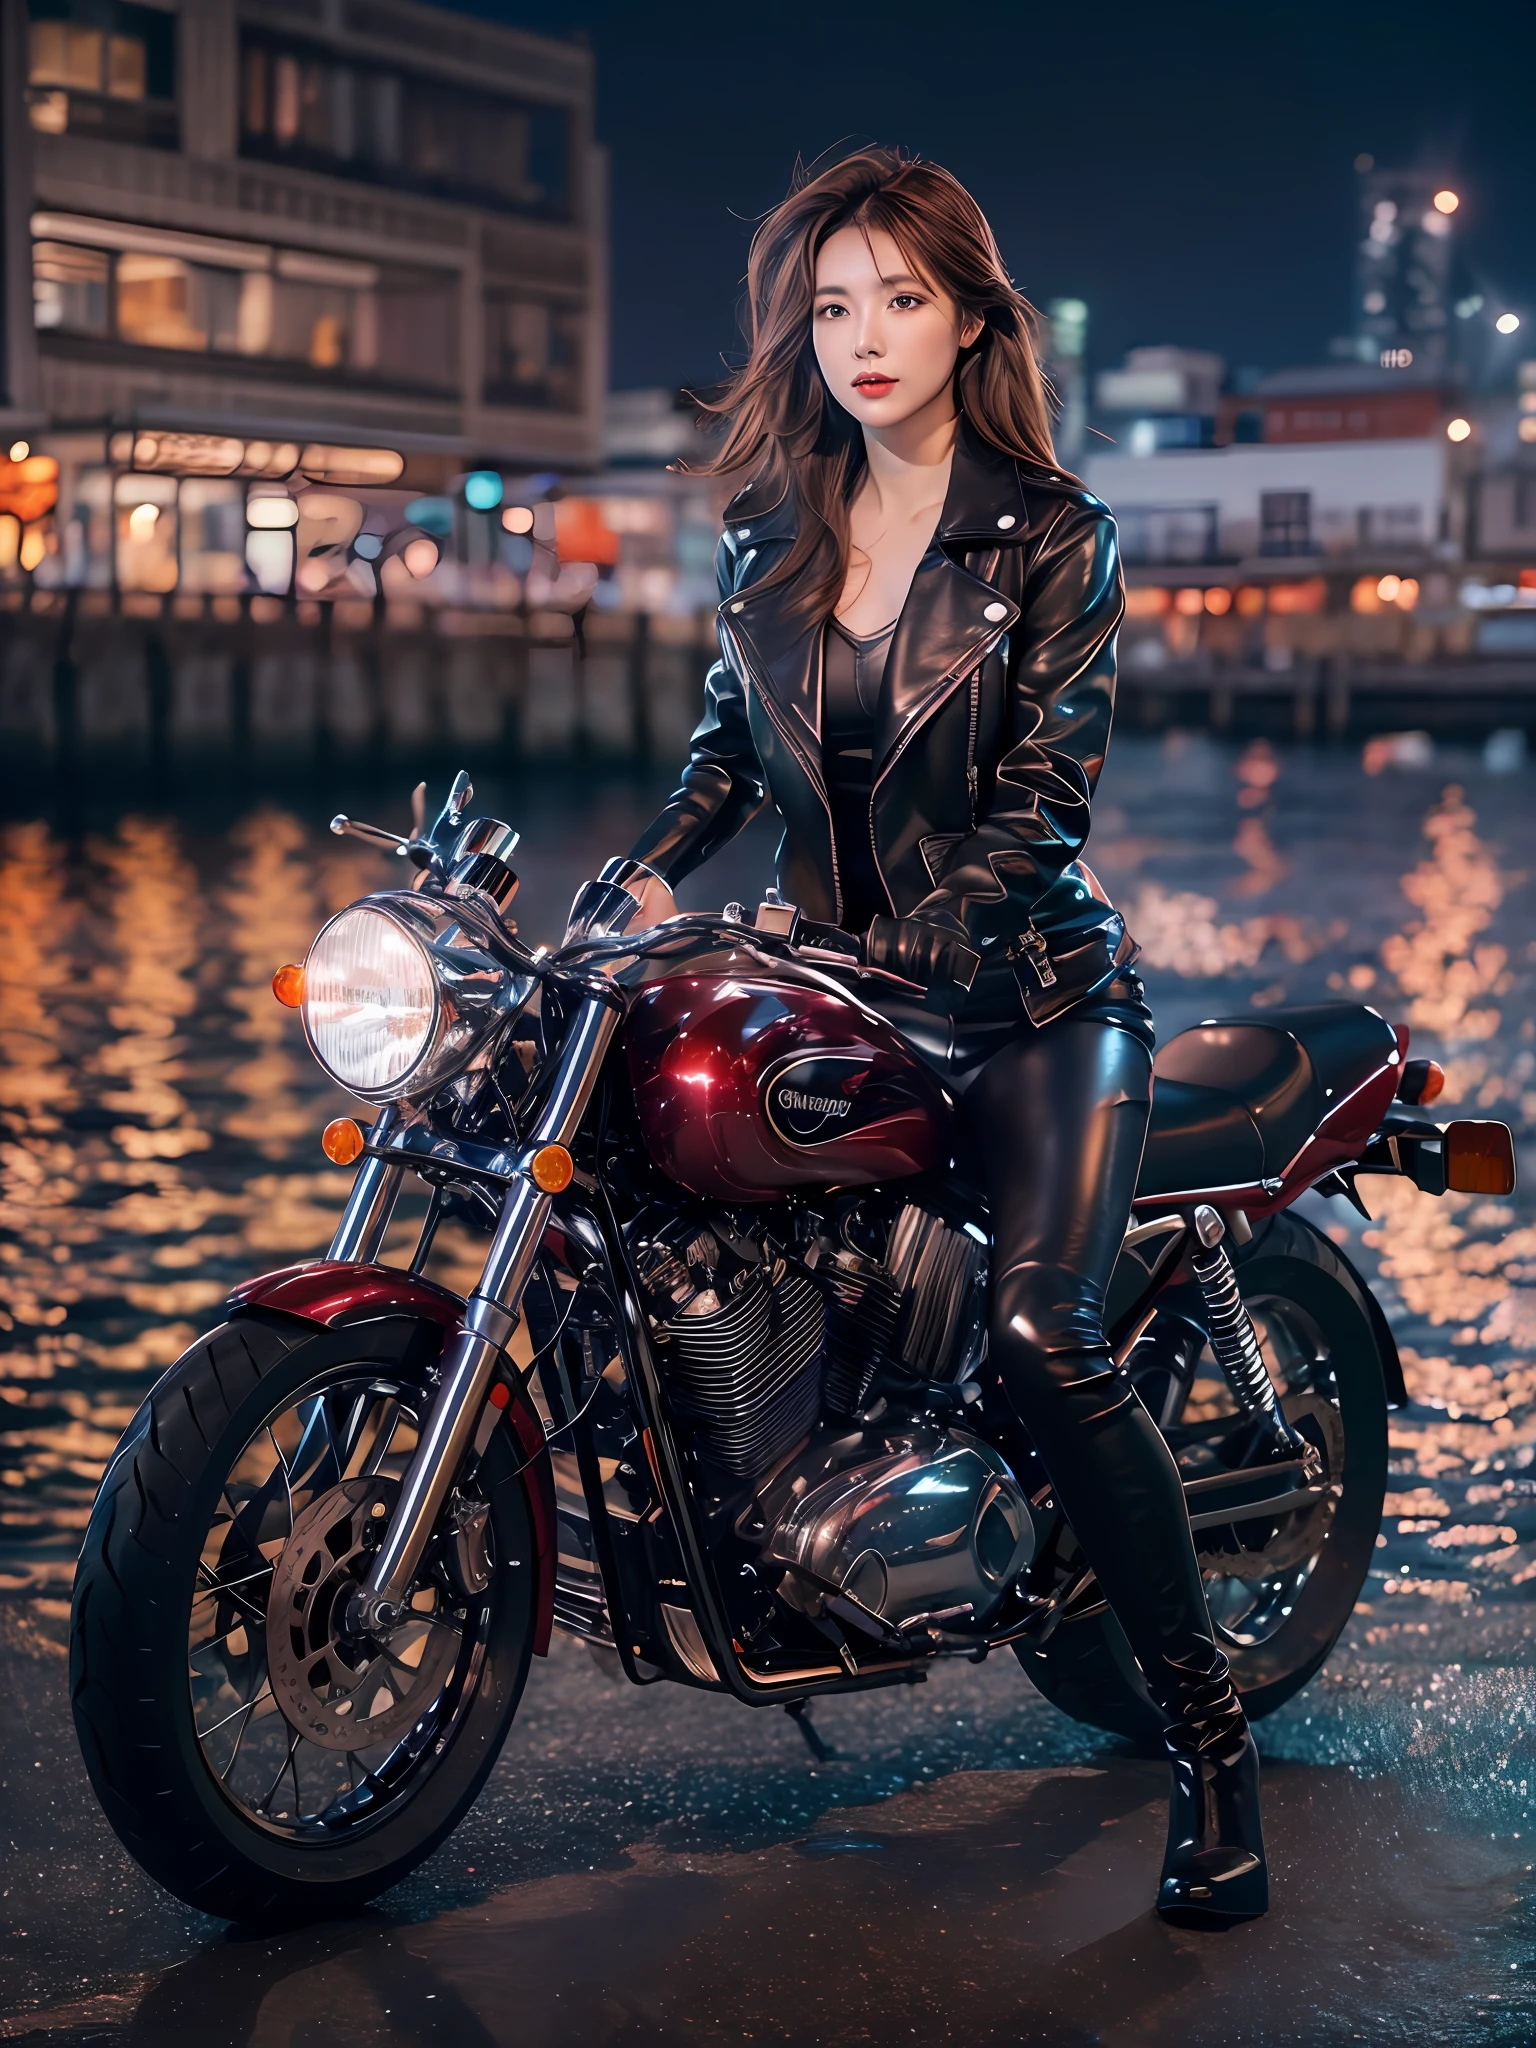 (桌上), 全身照, 整個摩托車的照片, 日本可愛的年輕女子, 在碼頭騎一輛古老的傳統閃亮金屬銀色摩托車, 迷人的造型, 齊肩閃亮光滑的淺棕色頭髮, 穿著黑色皮革騎行夾克, 騎馬夾克下有光澤的緞面紅色比基尼, 皮革黑色騎乘手套, 皮革黑褲, 皮革黑色高跟長靴, 凝視著大海的夜景, 絕對漂亮的臉, 雙眼皮, 自然妆容, 長長的睫毛, 有光澤的嘴唇, 8k分辨率, 高細節, 详细的发型, 詳細的臉部, 黑眼睛, 優雅的, 史诗, 電影燈光, 辛烷渲染, 充滿活力的, 超現實, 白皙的皮膚, 完美四肢, 完美的解剖結構